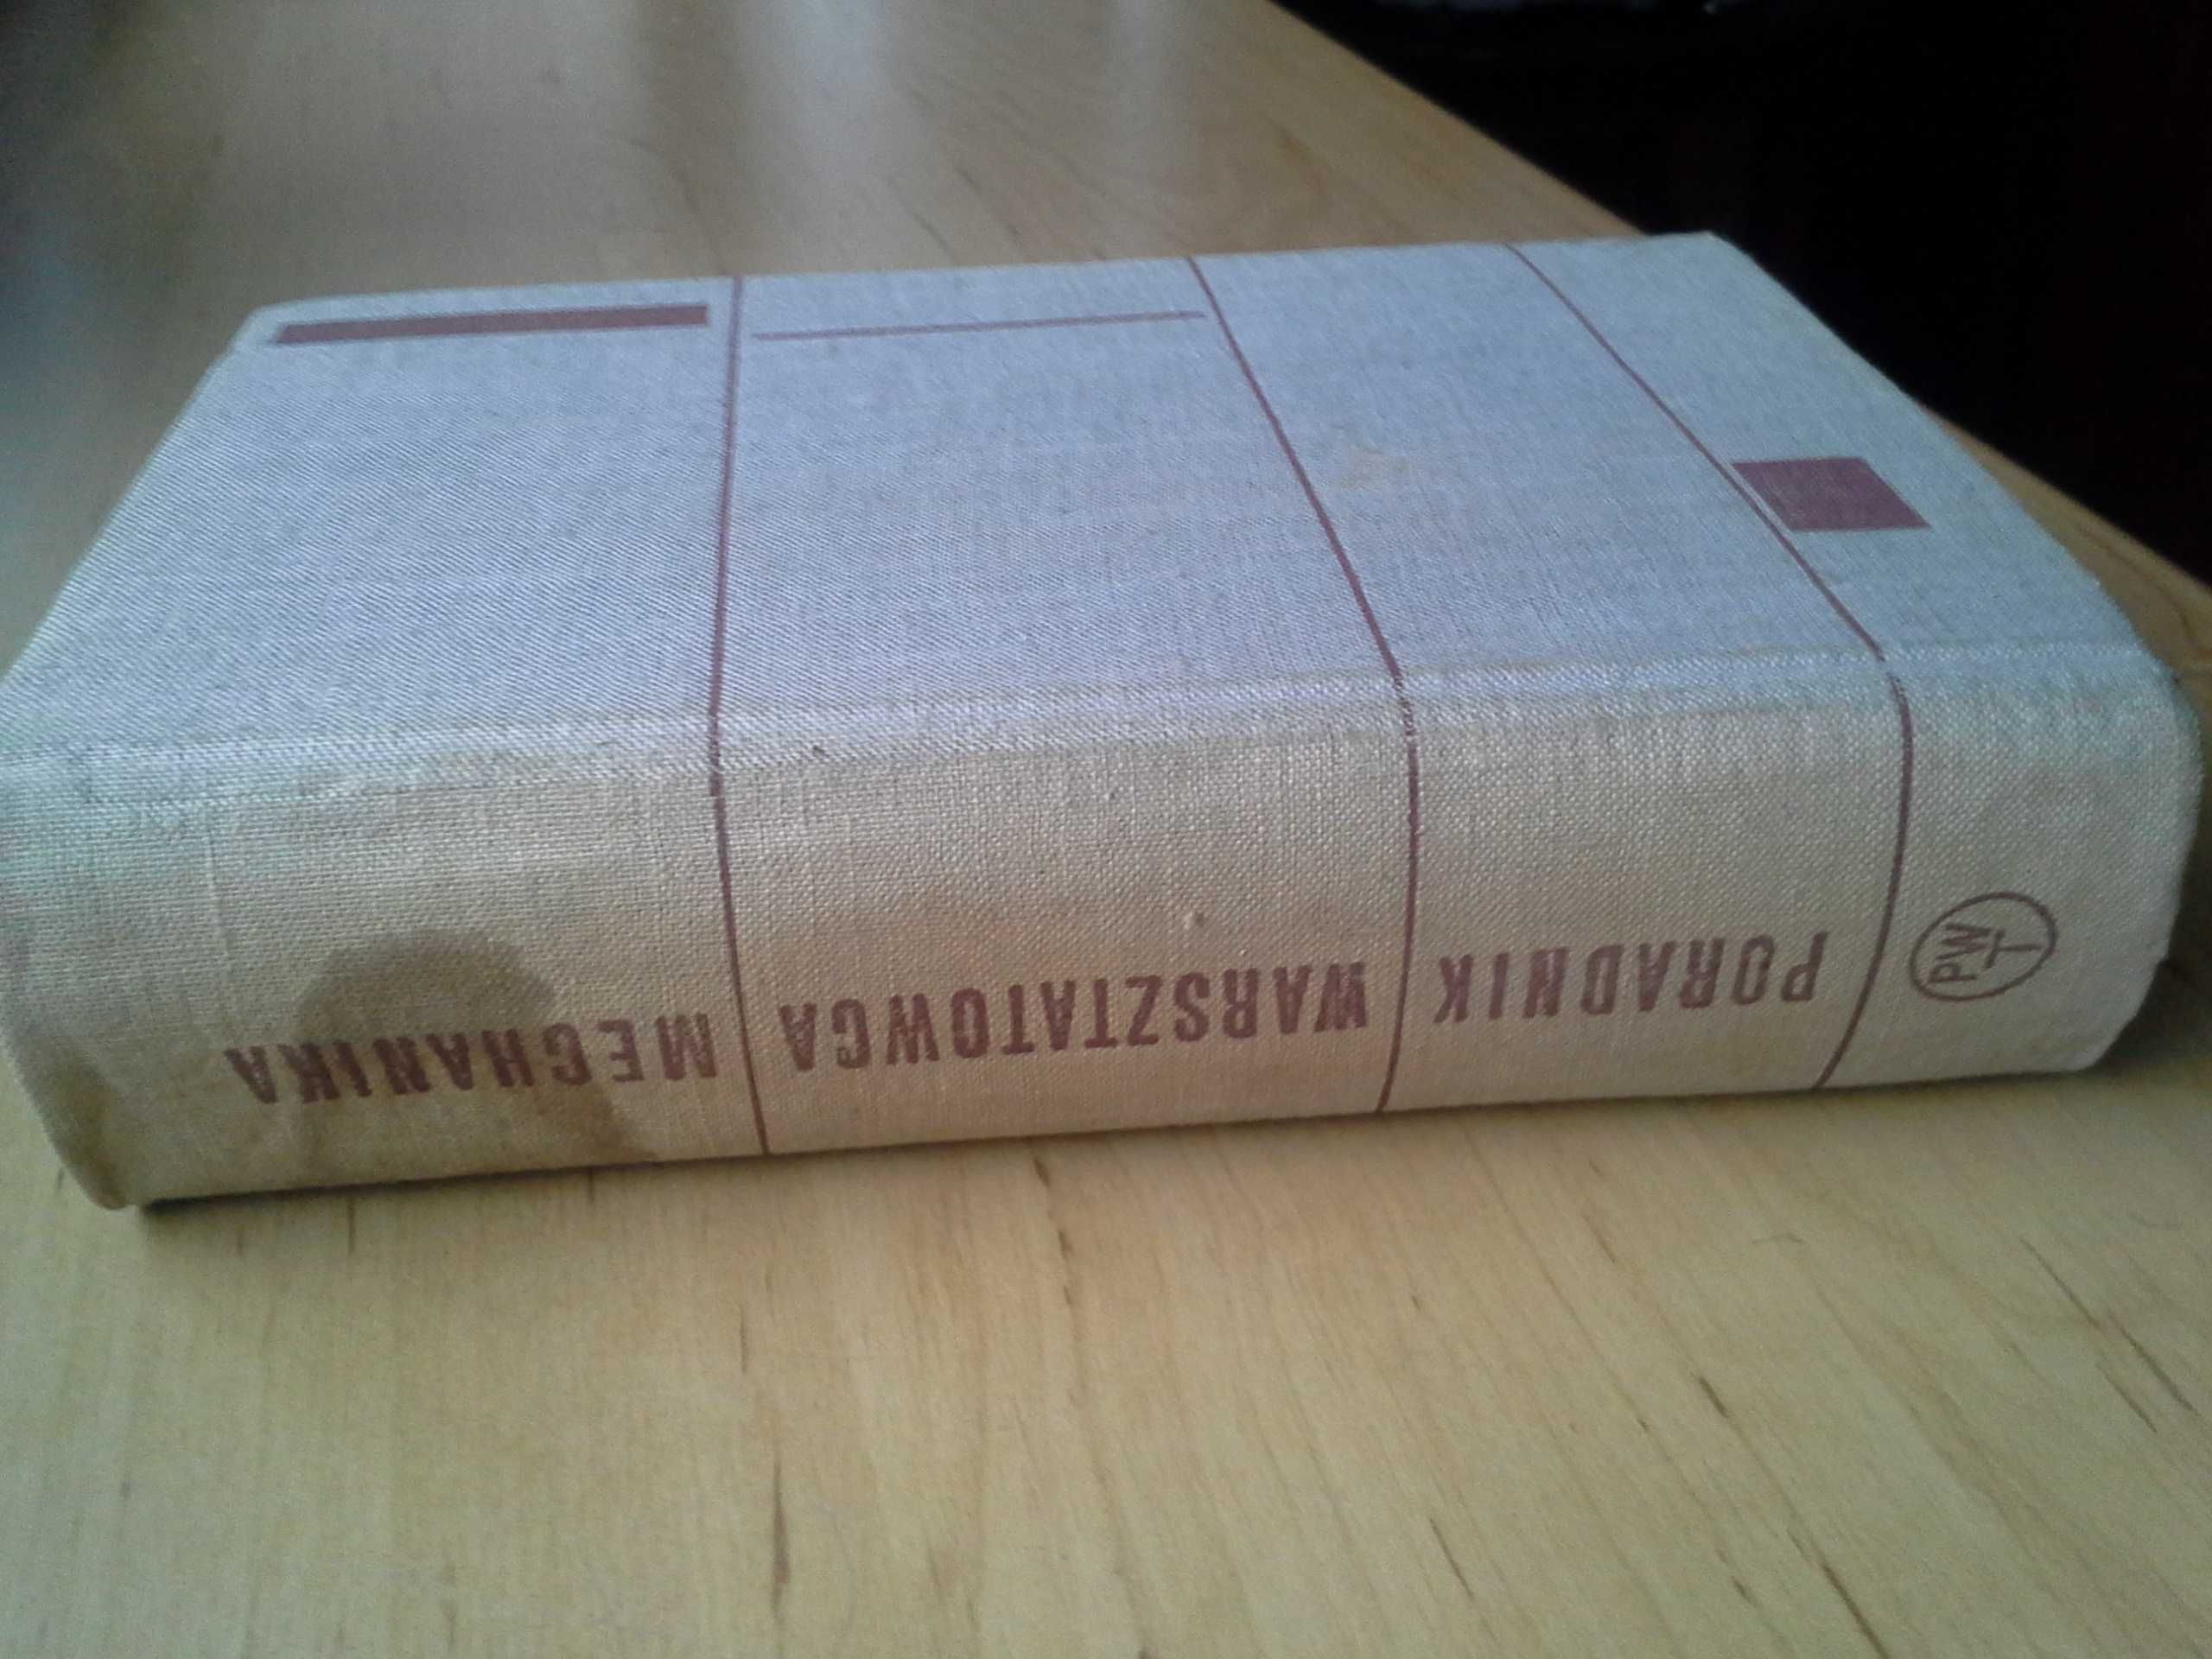 Poradnik Warsztatowca Mechanika, Wiktor Surowiak, wydanie I, 1961r.